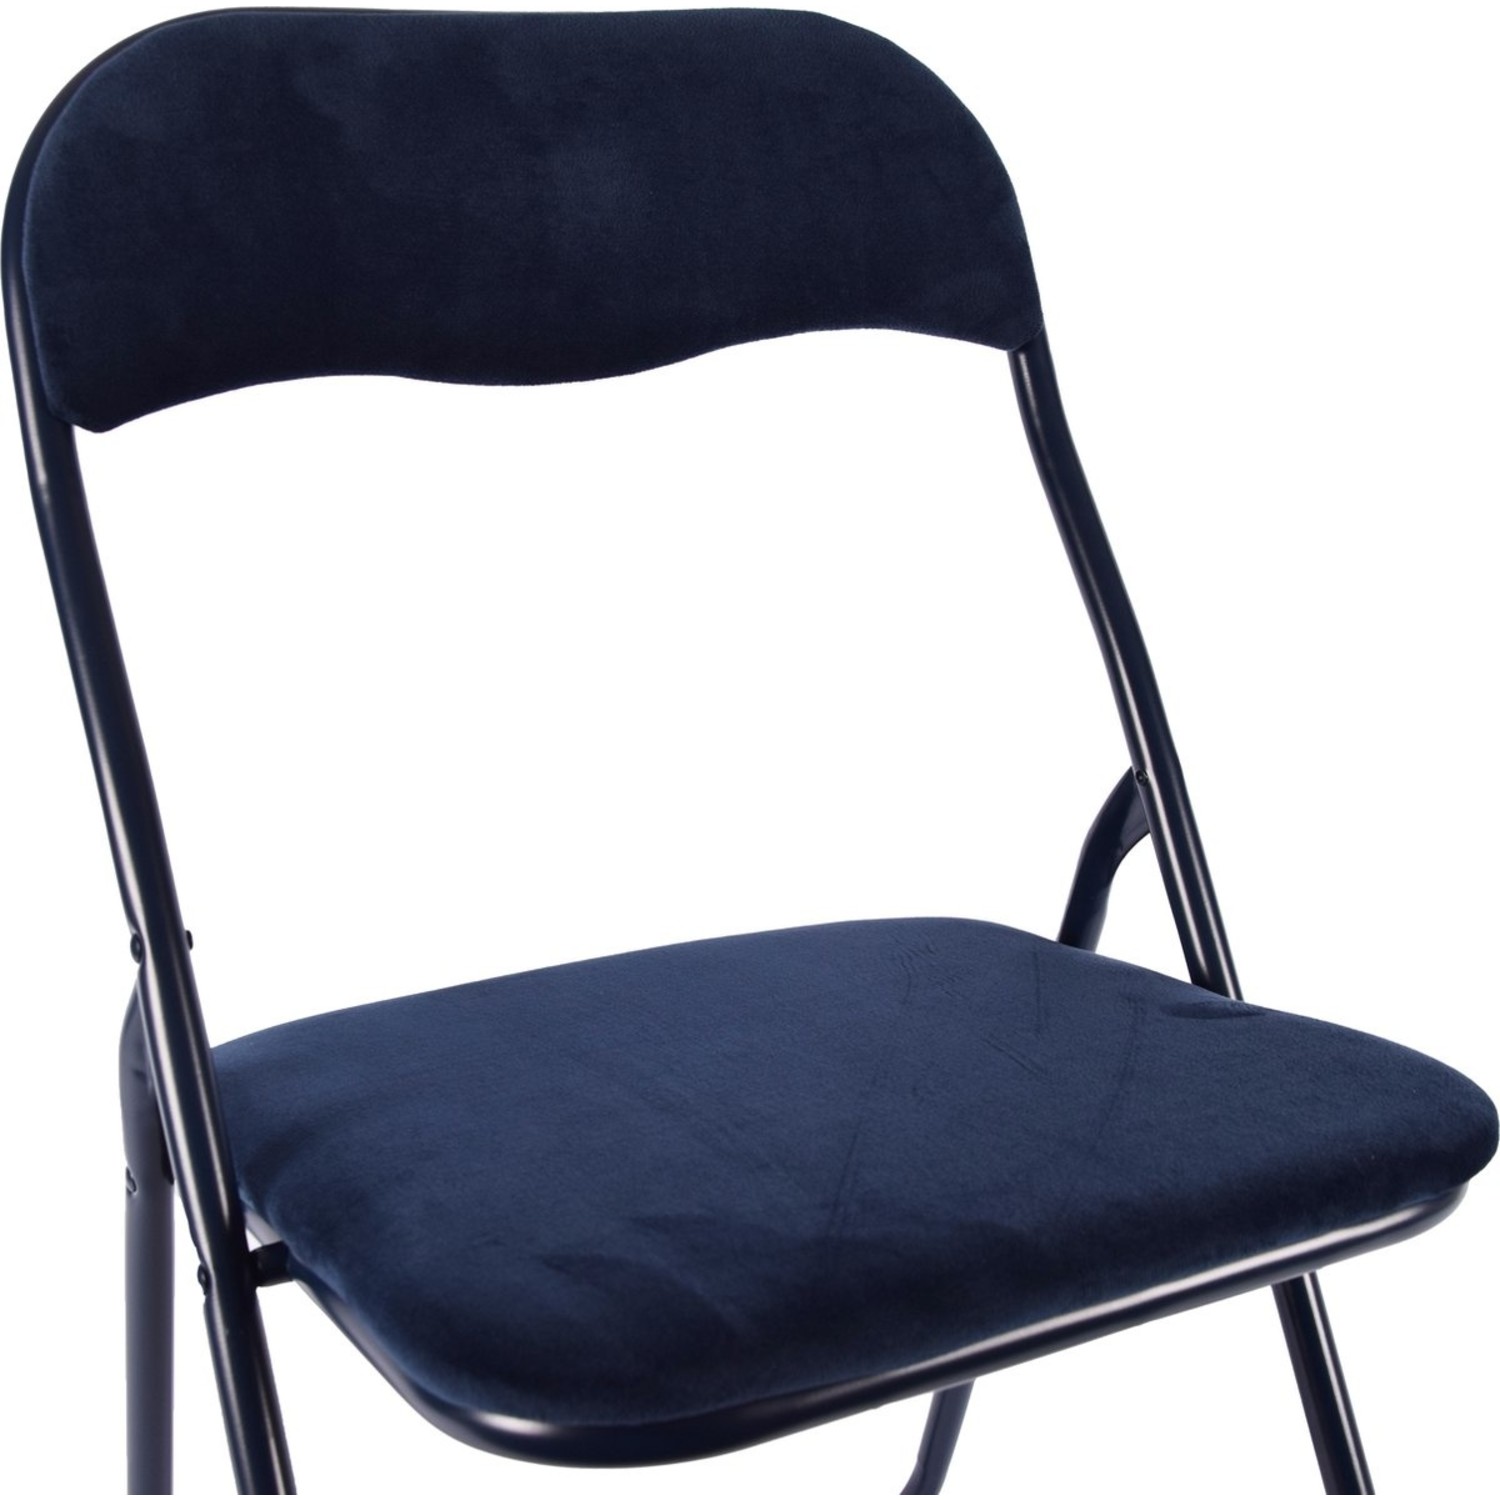 pack Min Verplaatsbaar Klapstoel- Vouwstoel velvet zitvlak en rug bekleed - stoel tafelstoel -  Discountershop.nl